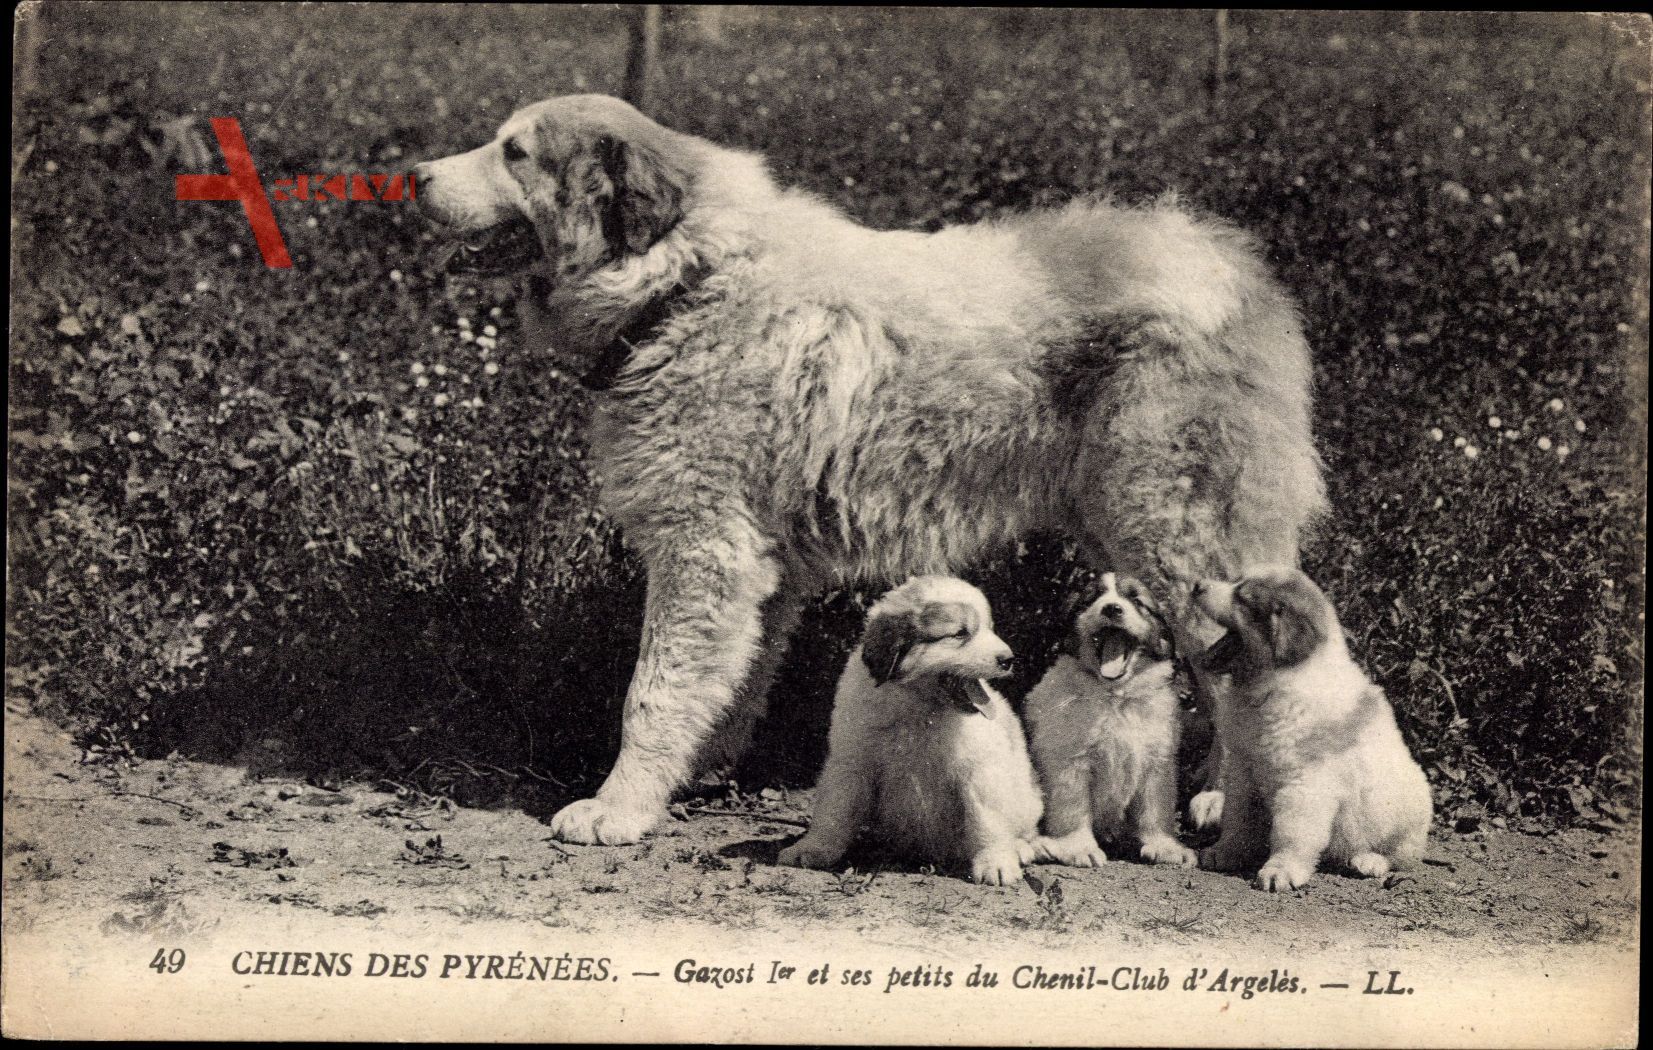 Chiens des Pyrénées, Gazost 1er et ses petits du Chenil Club dArgelès